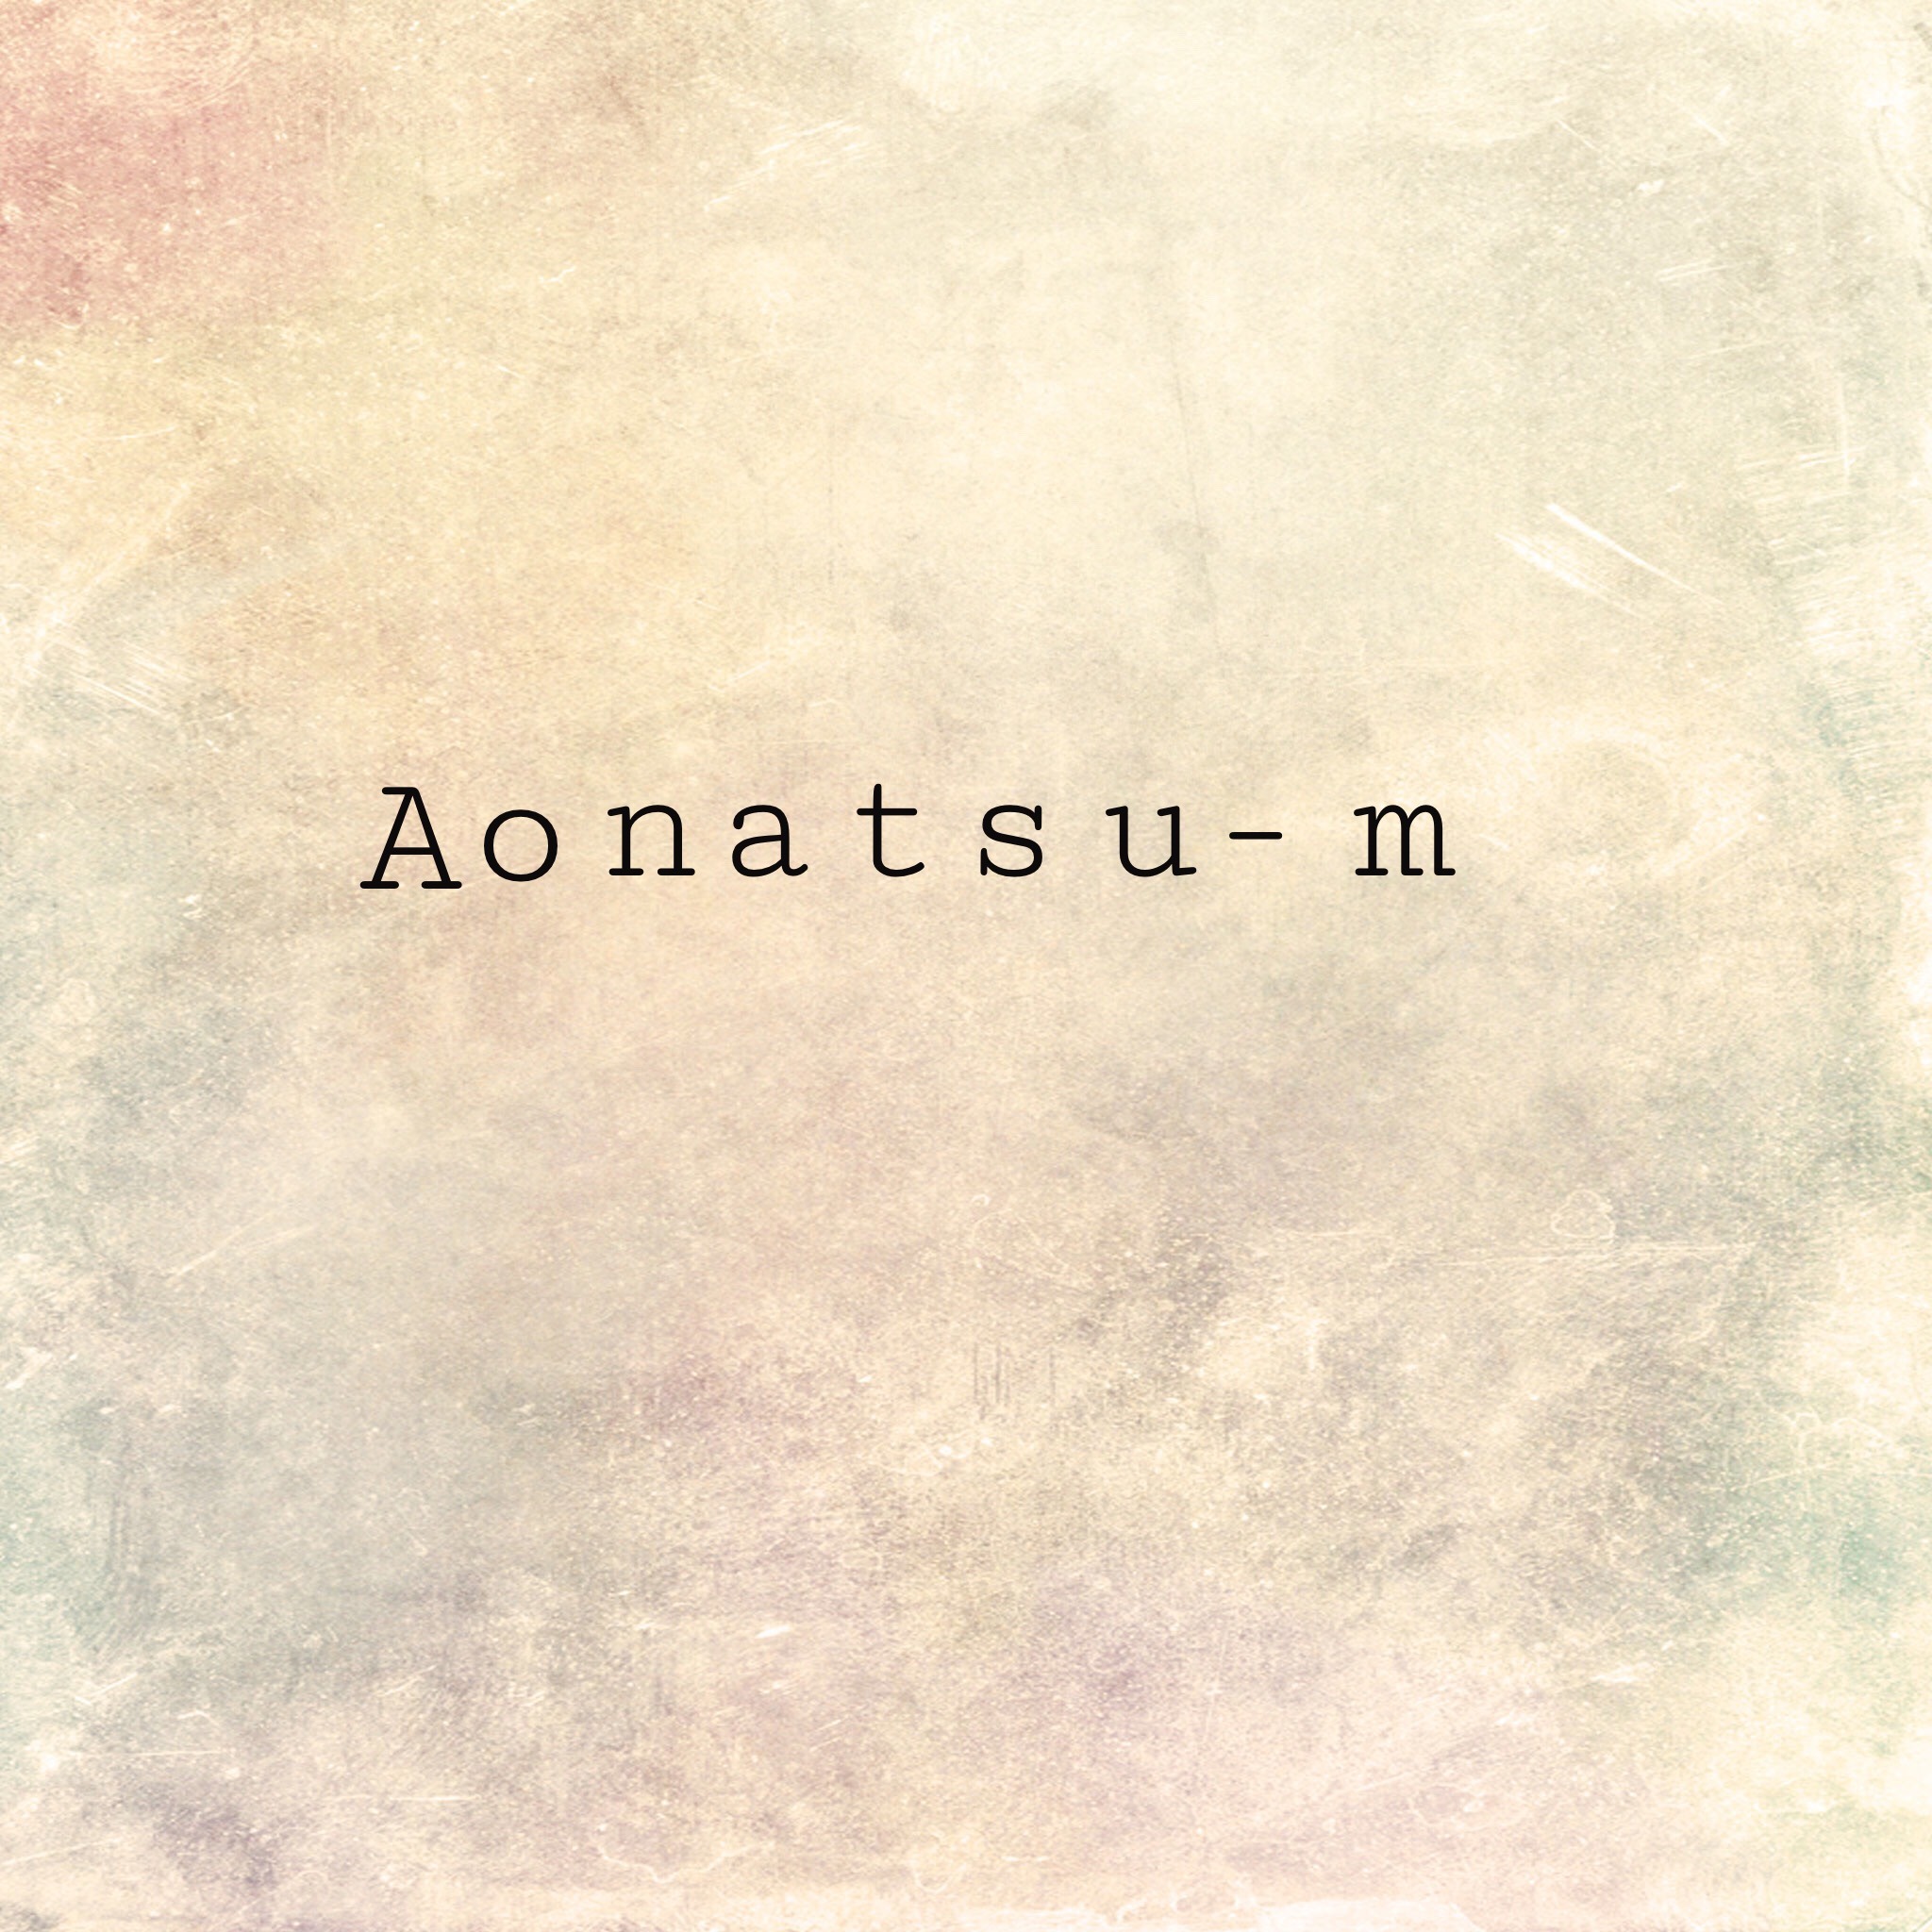 Aonatsu-m